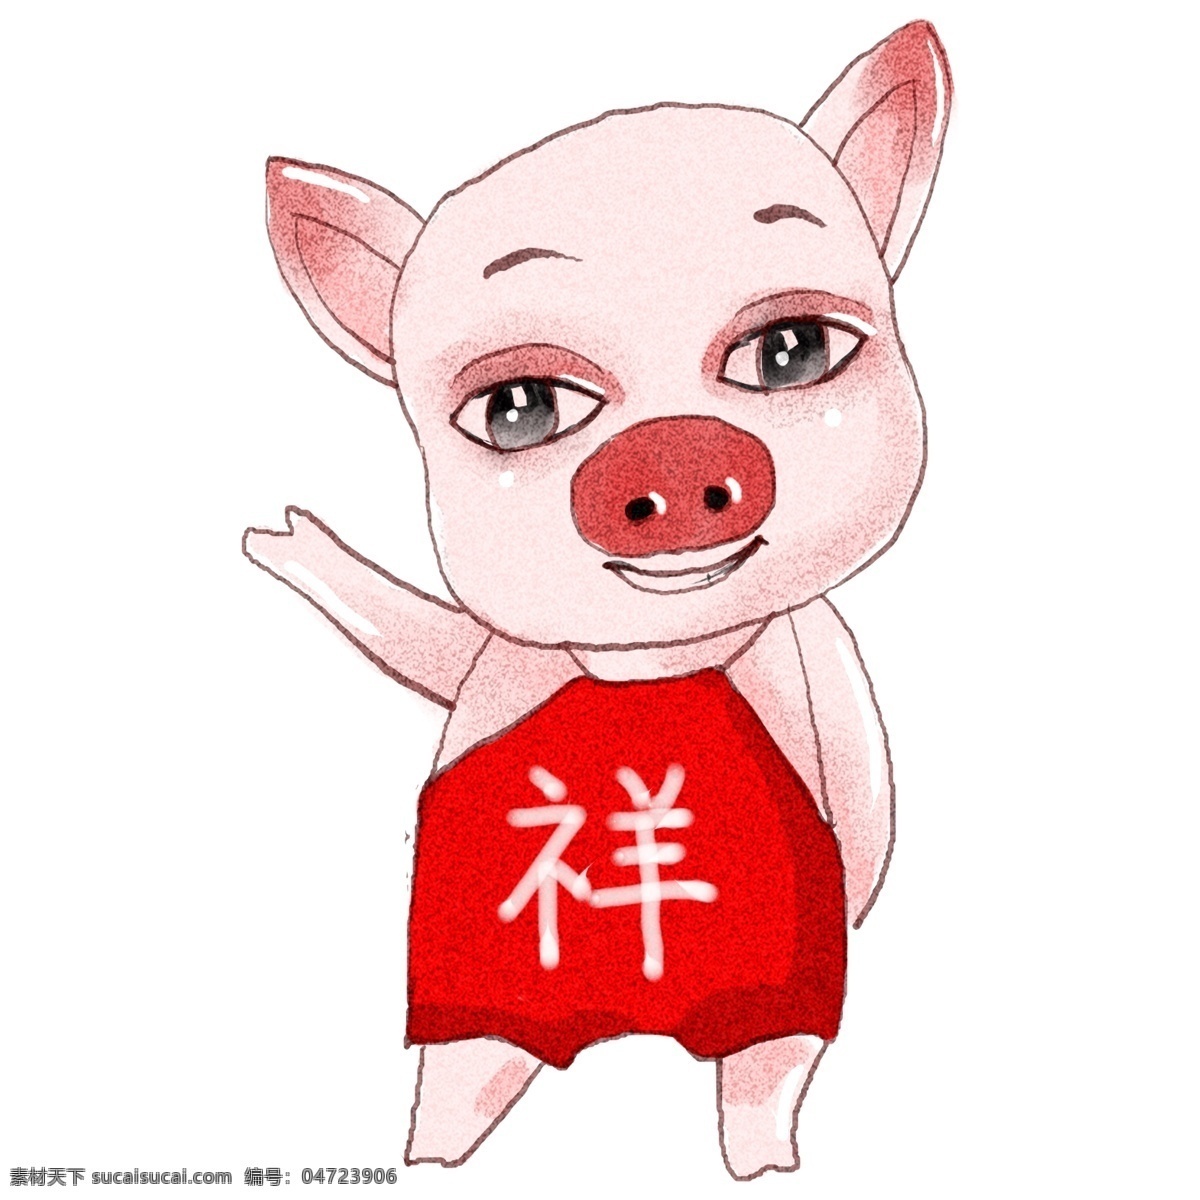 2019 生肖 猪 猪年 吉祥 原创 商用 元素 可爱 祥 生肖猪 手绘 板绘 水彩